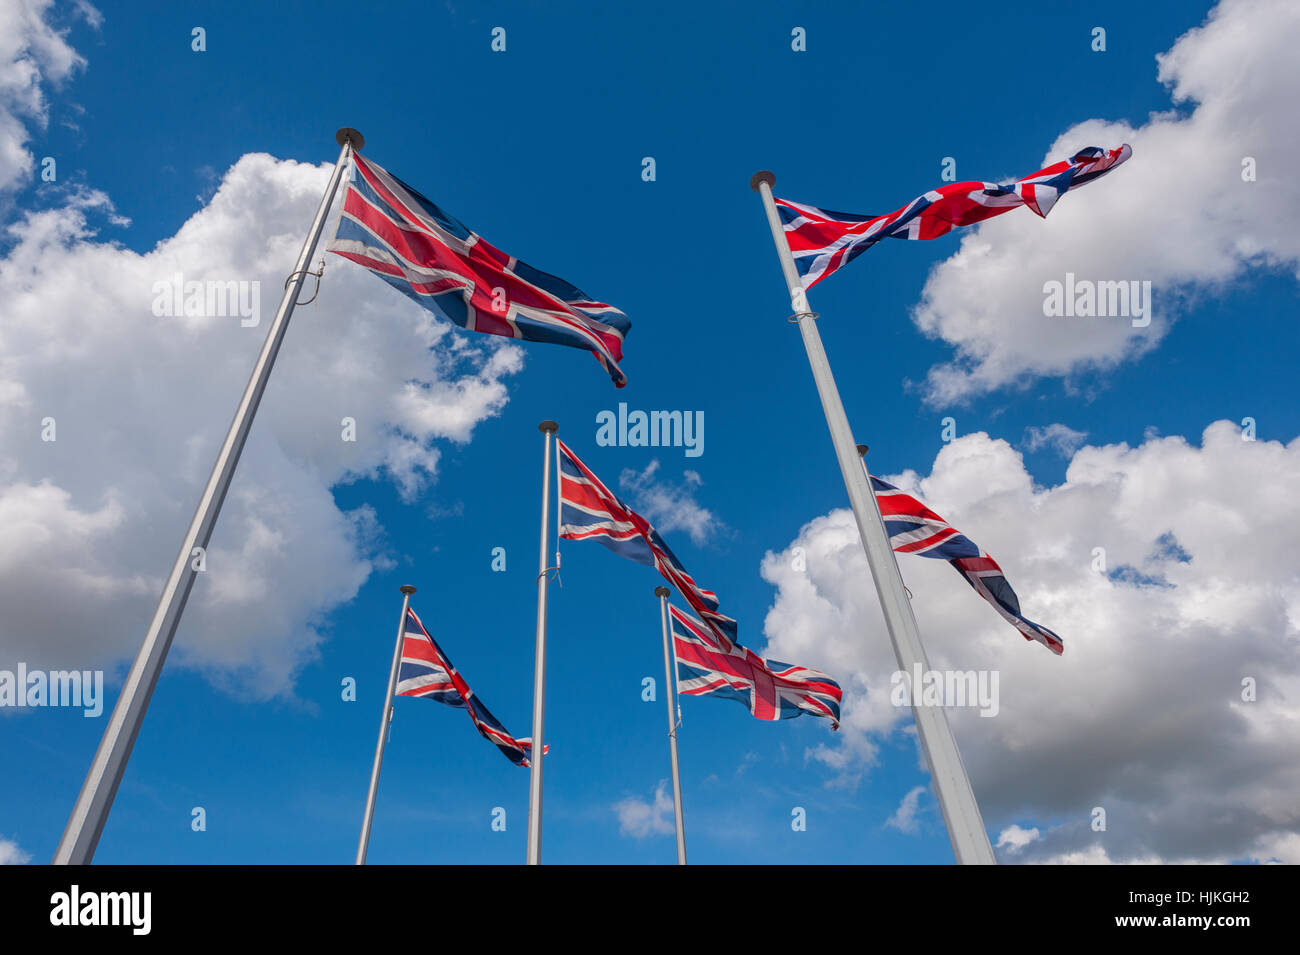 Six drapeaux Union Jack de 6 mâts de drapeau sur un jour ensoleillé, ciel bleu et nuages blancs. Banque D'Images